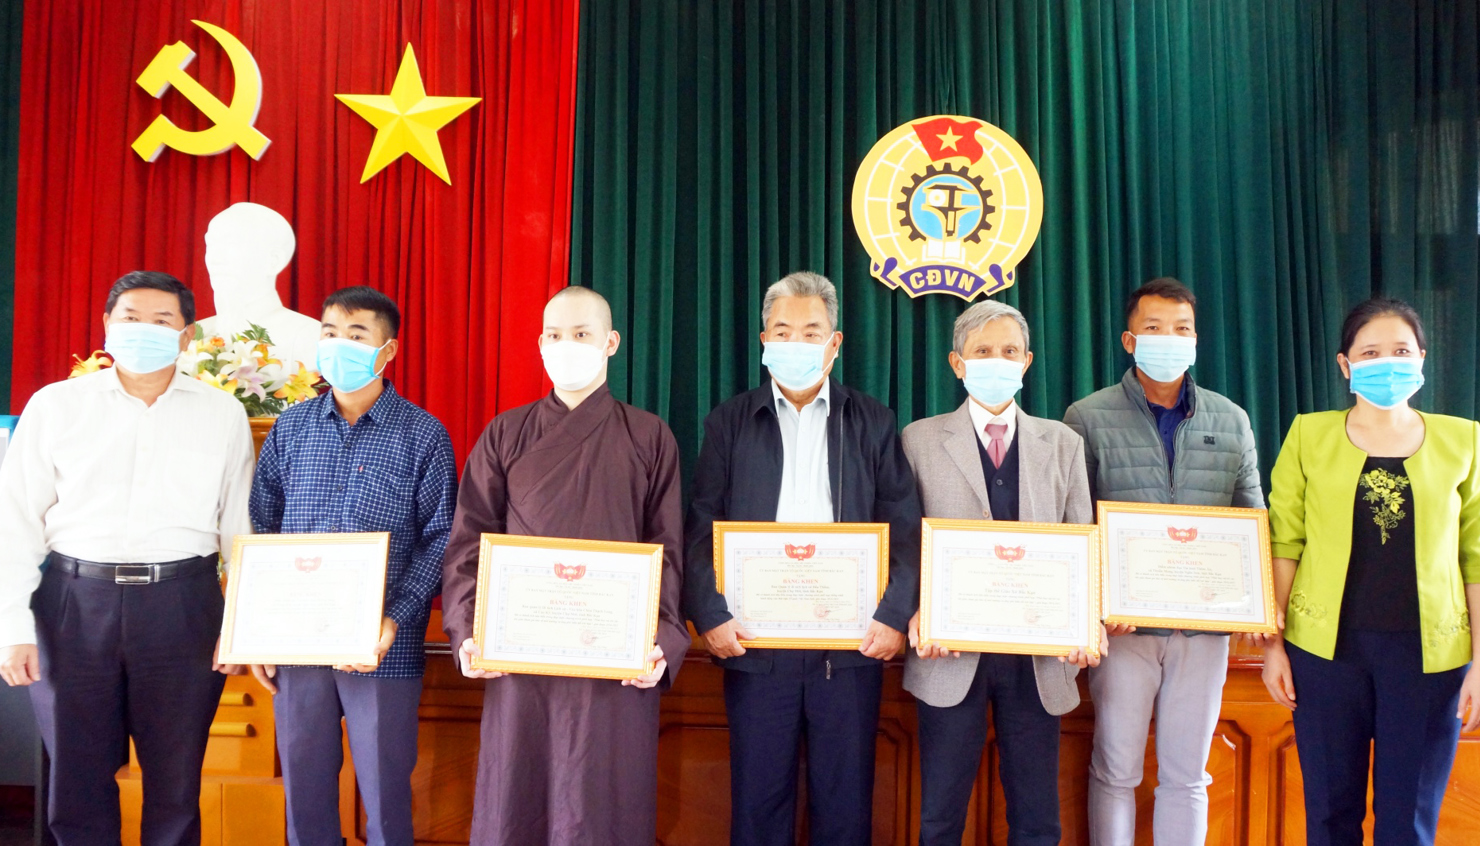 Ủy ban MTTQ Việt Nam tỉnh Bắc Kạn  tặng Bằng khen cho các tập thể trong thực hiện Chương trình phối hợp “Phát huy vai trò các tôn giáo tham gia bảo vệ môi trường và ứng phó với biến đổi khí hậu” giai đoạn 2016 - 2021